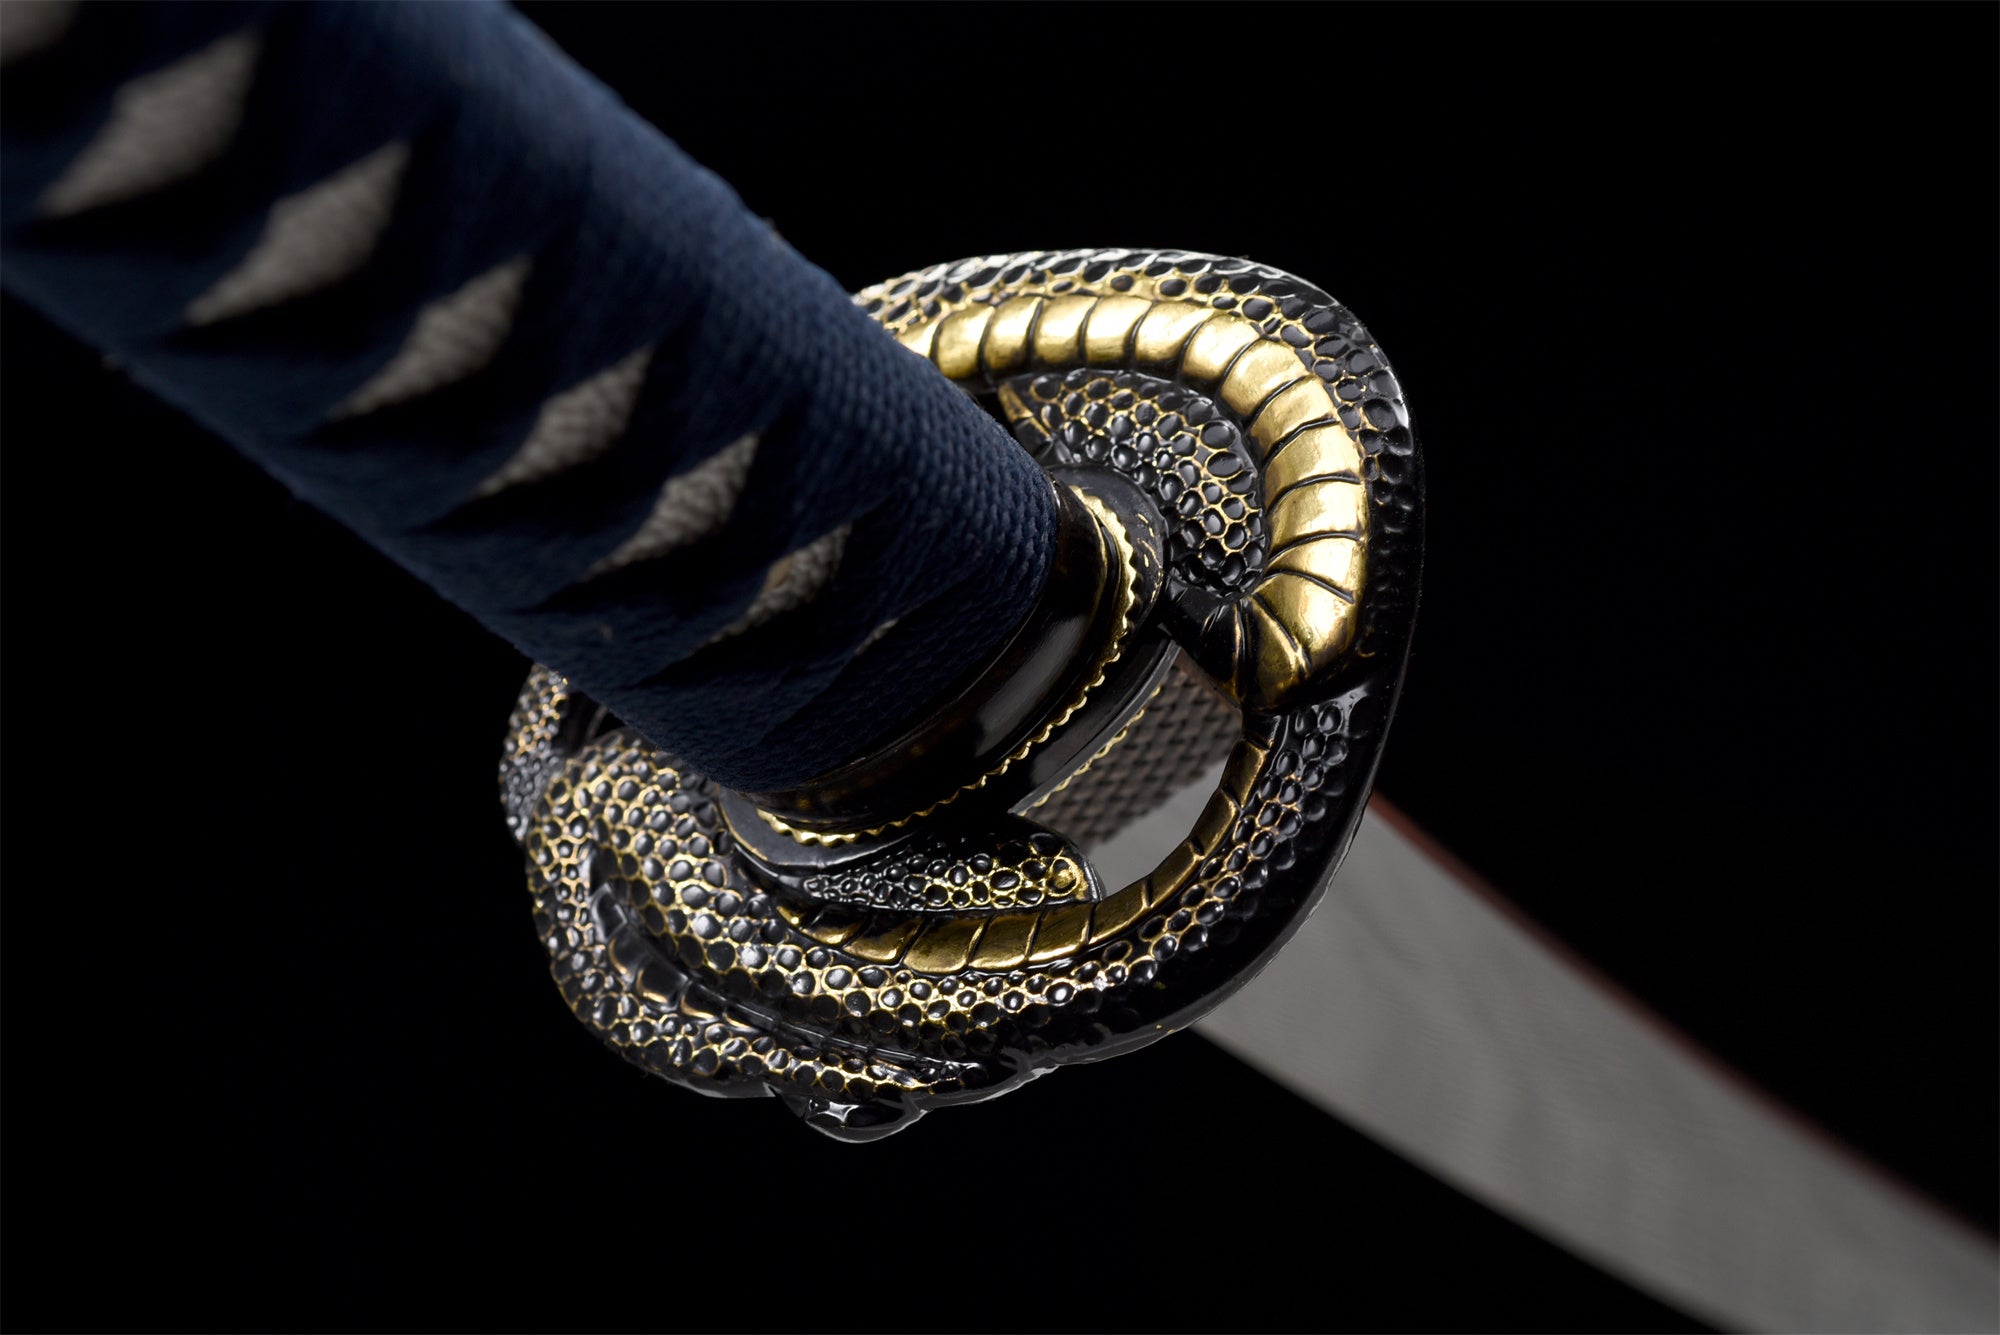 Handmade Katana Sword -Hell Snake Real Japanese Samurai Sword High Manganese Steel Full Tang